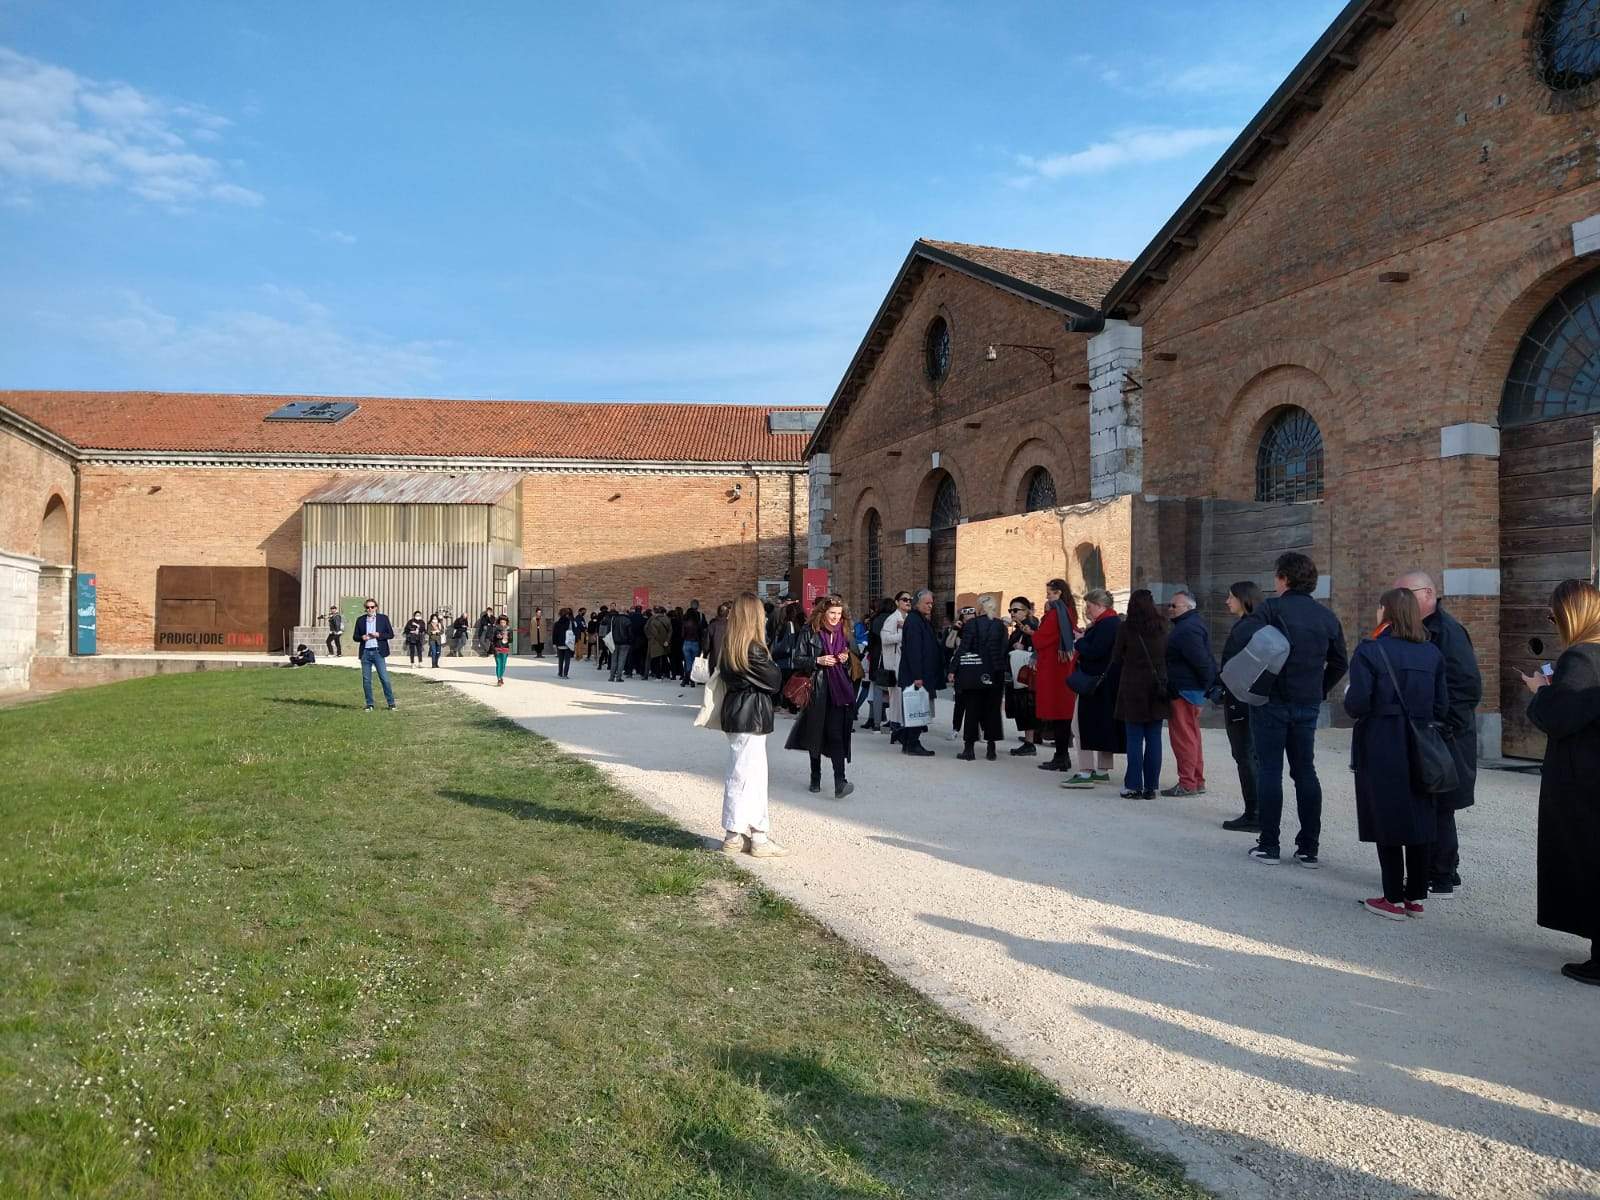 Biennale de Venise: le pavillon italien a fermé tôt aujourd'hui en raison d'une défaillance technique